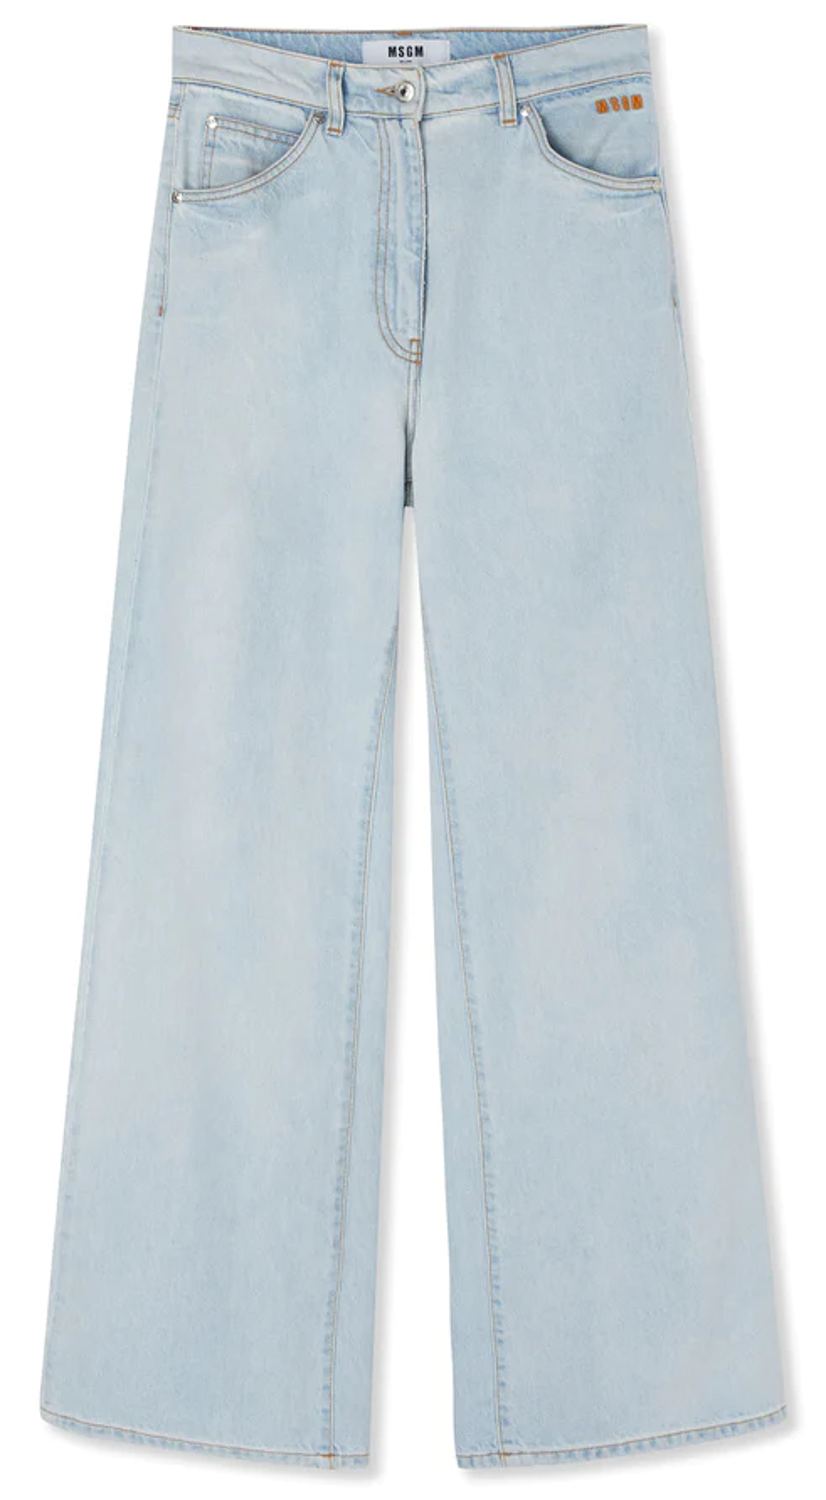 shop MSGM  Pantaloni: Pantaloni MSGM, jeans, gamba dritta, vita alta, 5 tasche, in denim chiaro.

Composizione: 100% cotone. number 2689